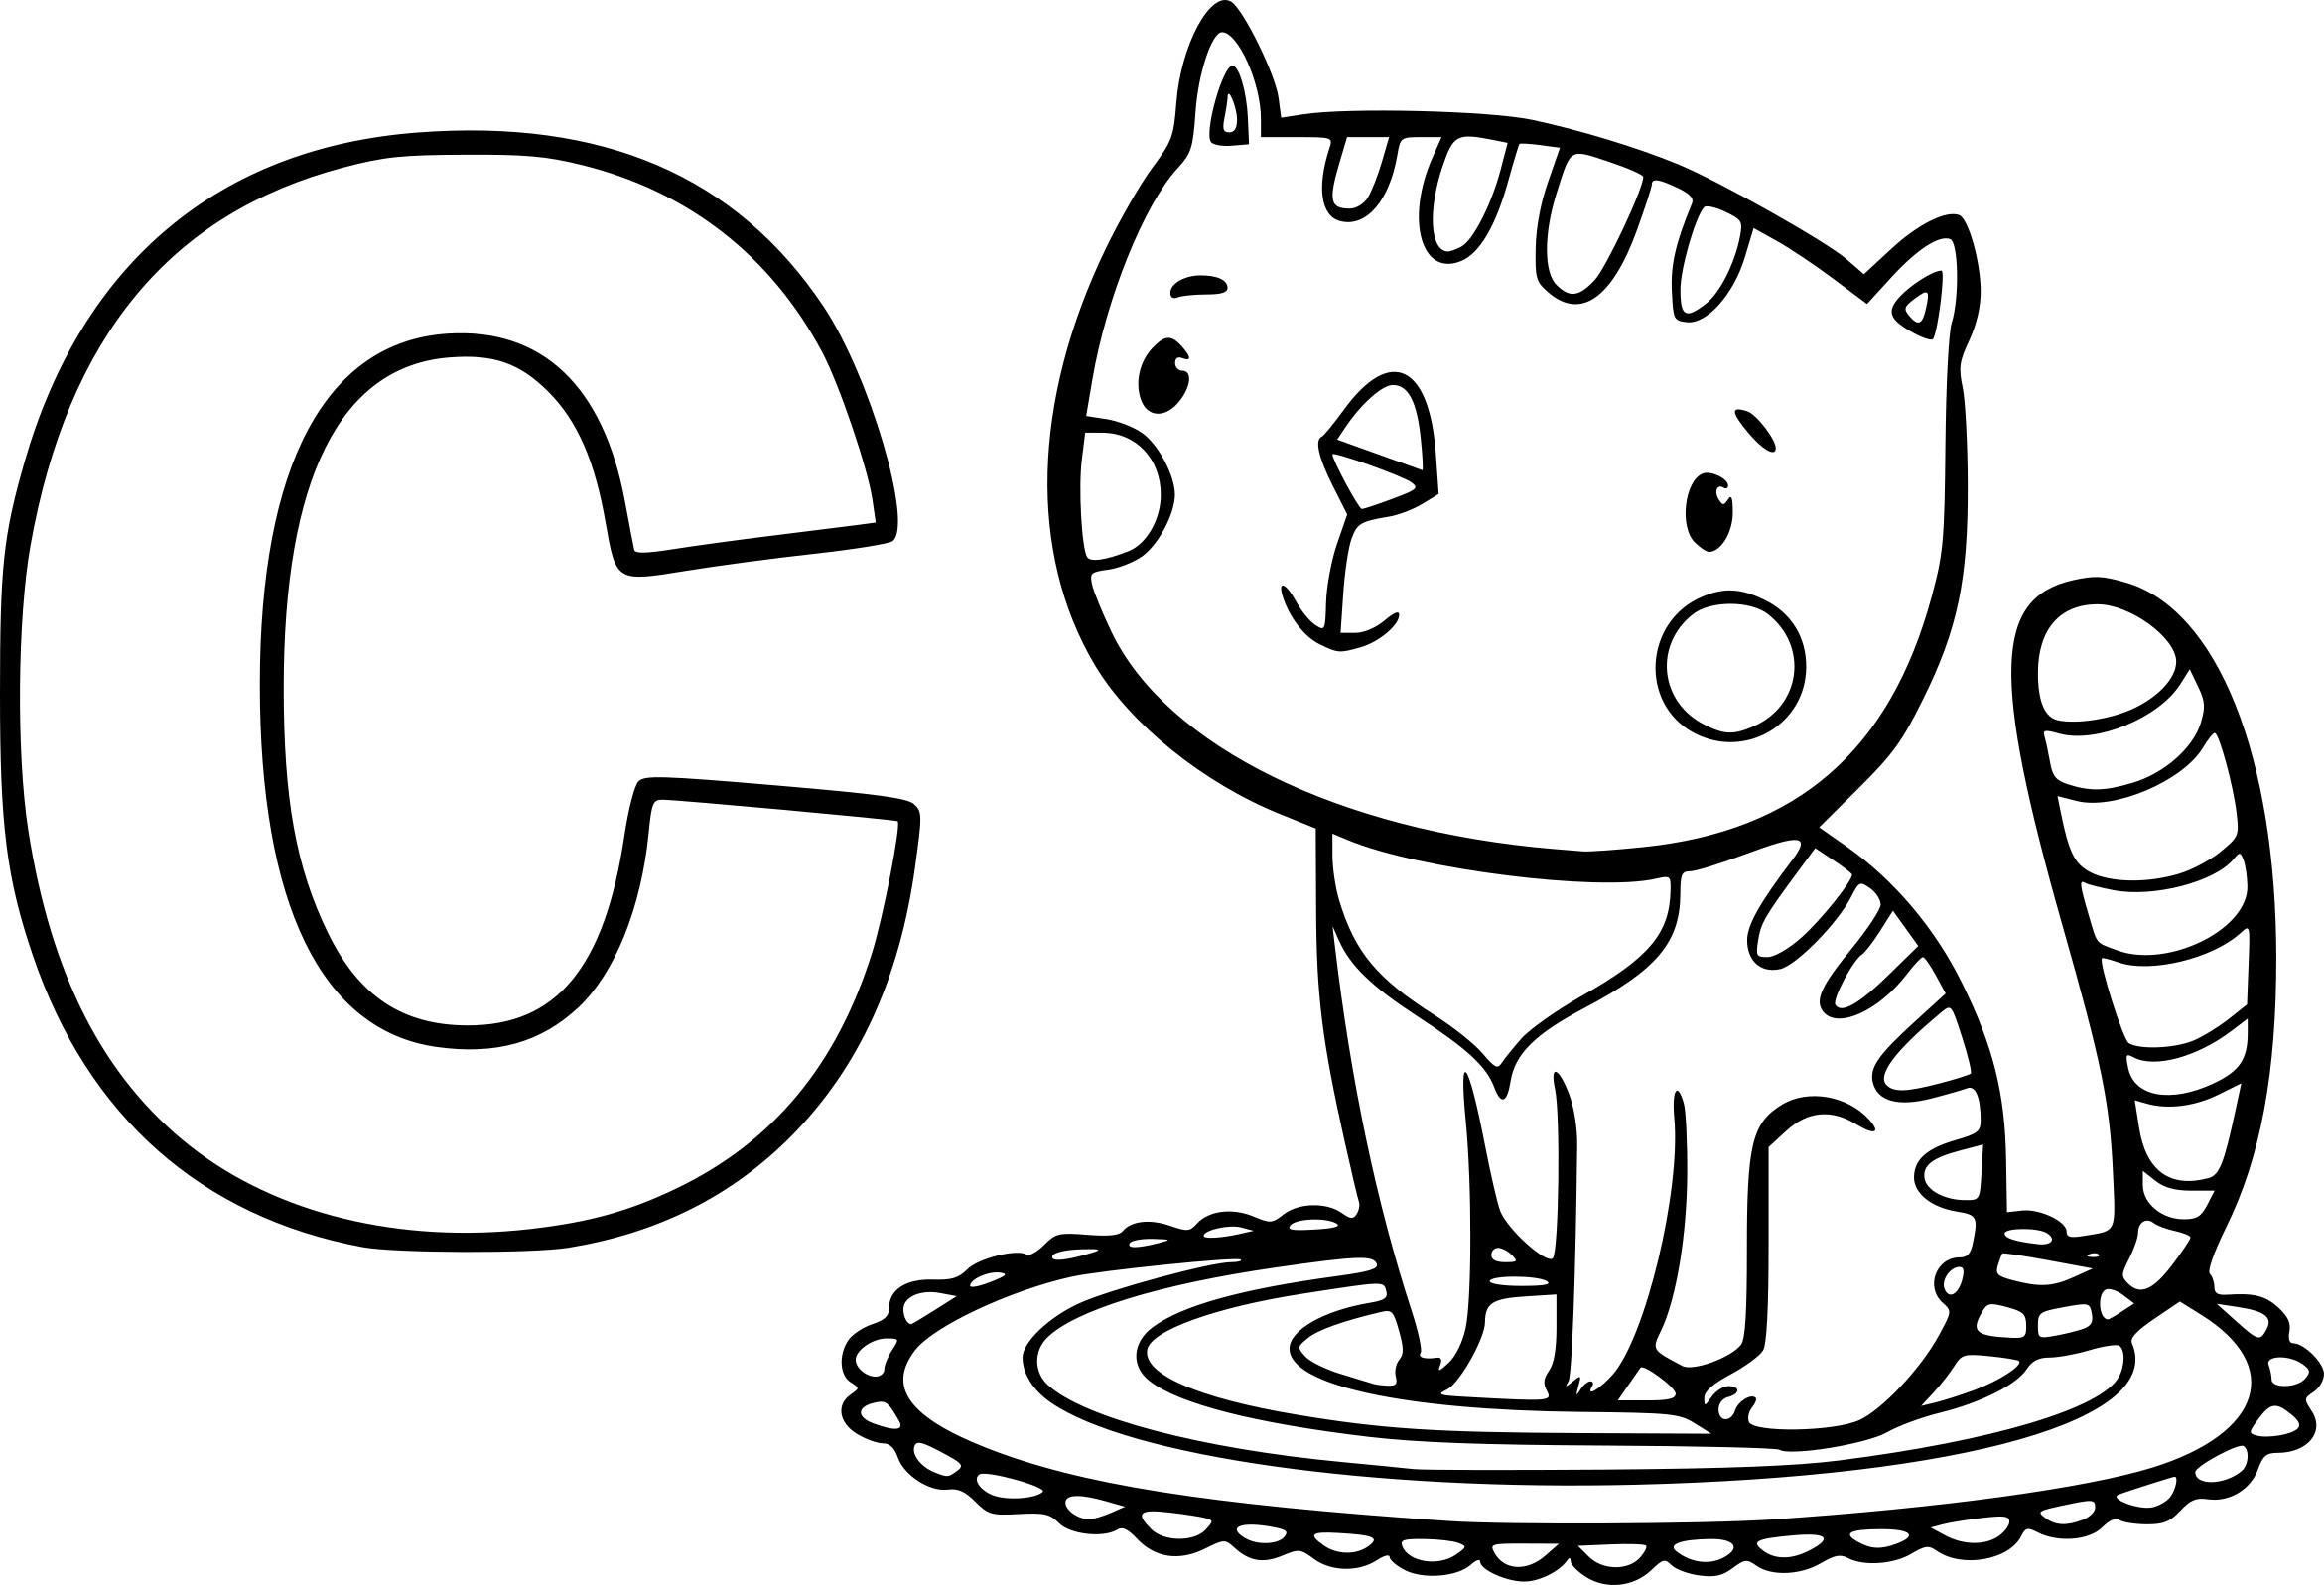 Disegno di C come gatto da colorare